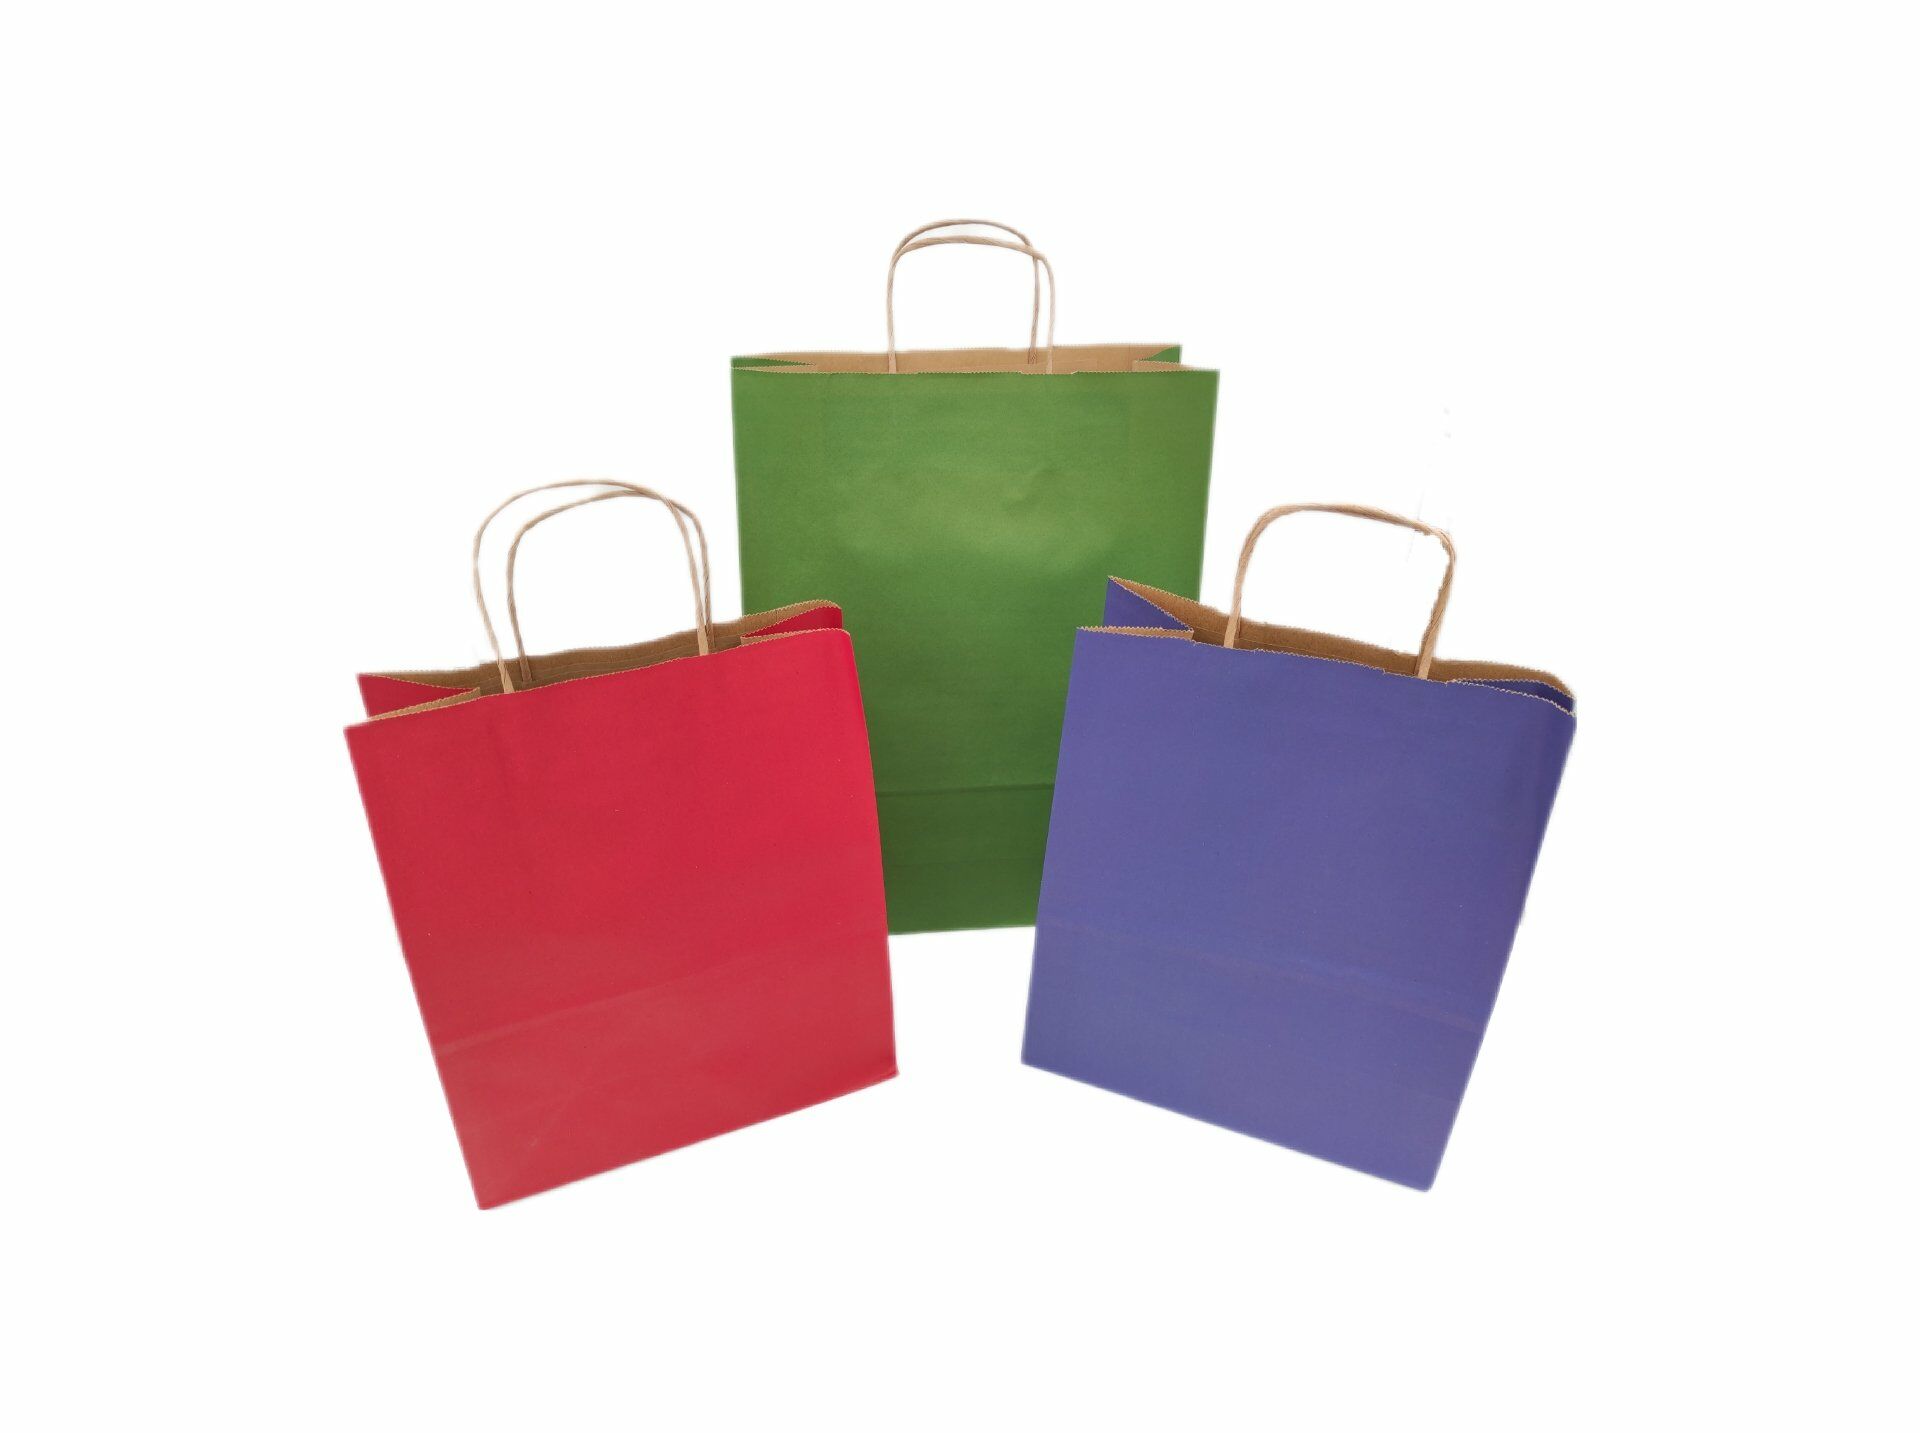 Roco Paper Yeniyıl Yılbaşı Büyük Kağıt Çanta Kırmızı Mavi 25*12*31 cm 31*12*41 cm Yeşil 3 adet